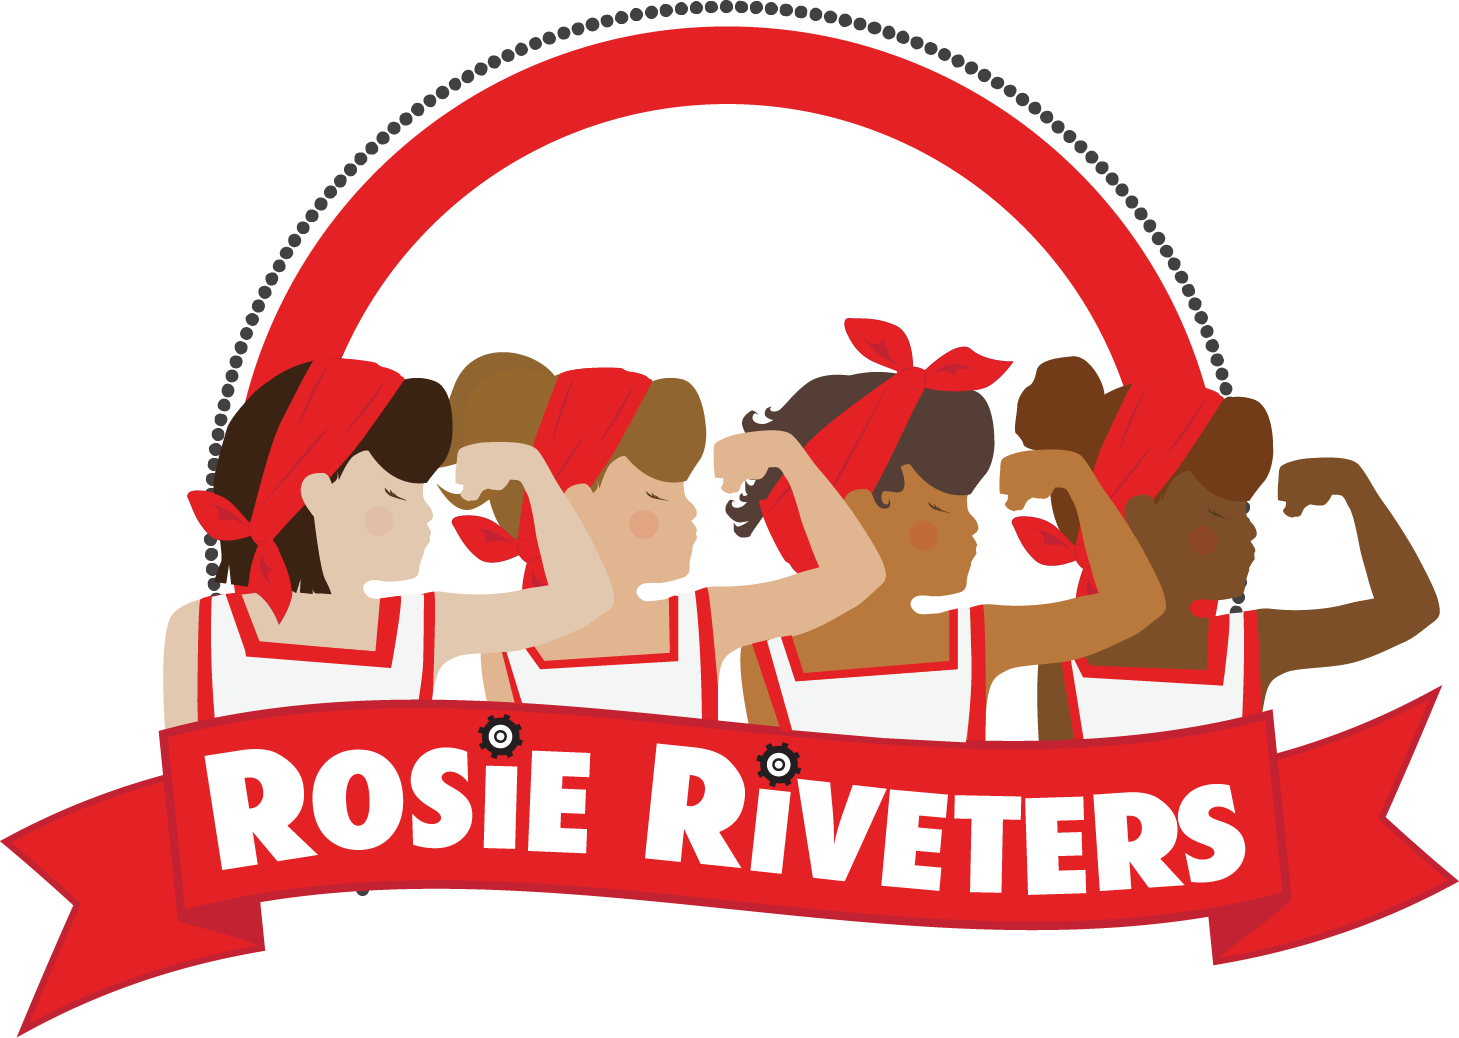 Rosie Riveters